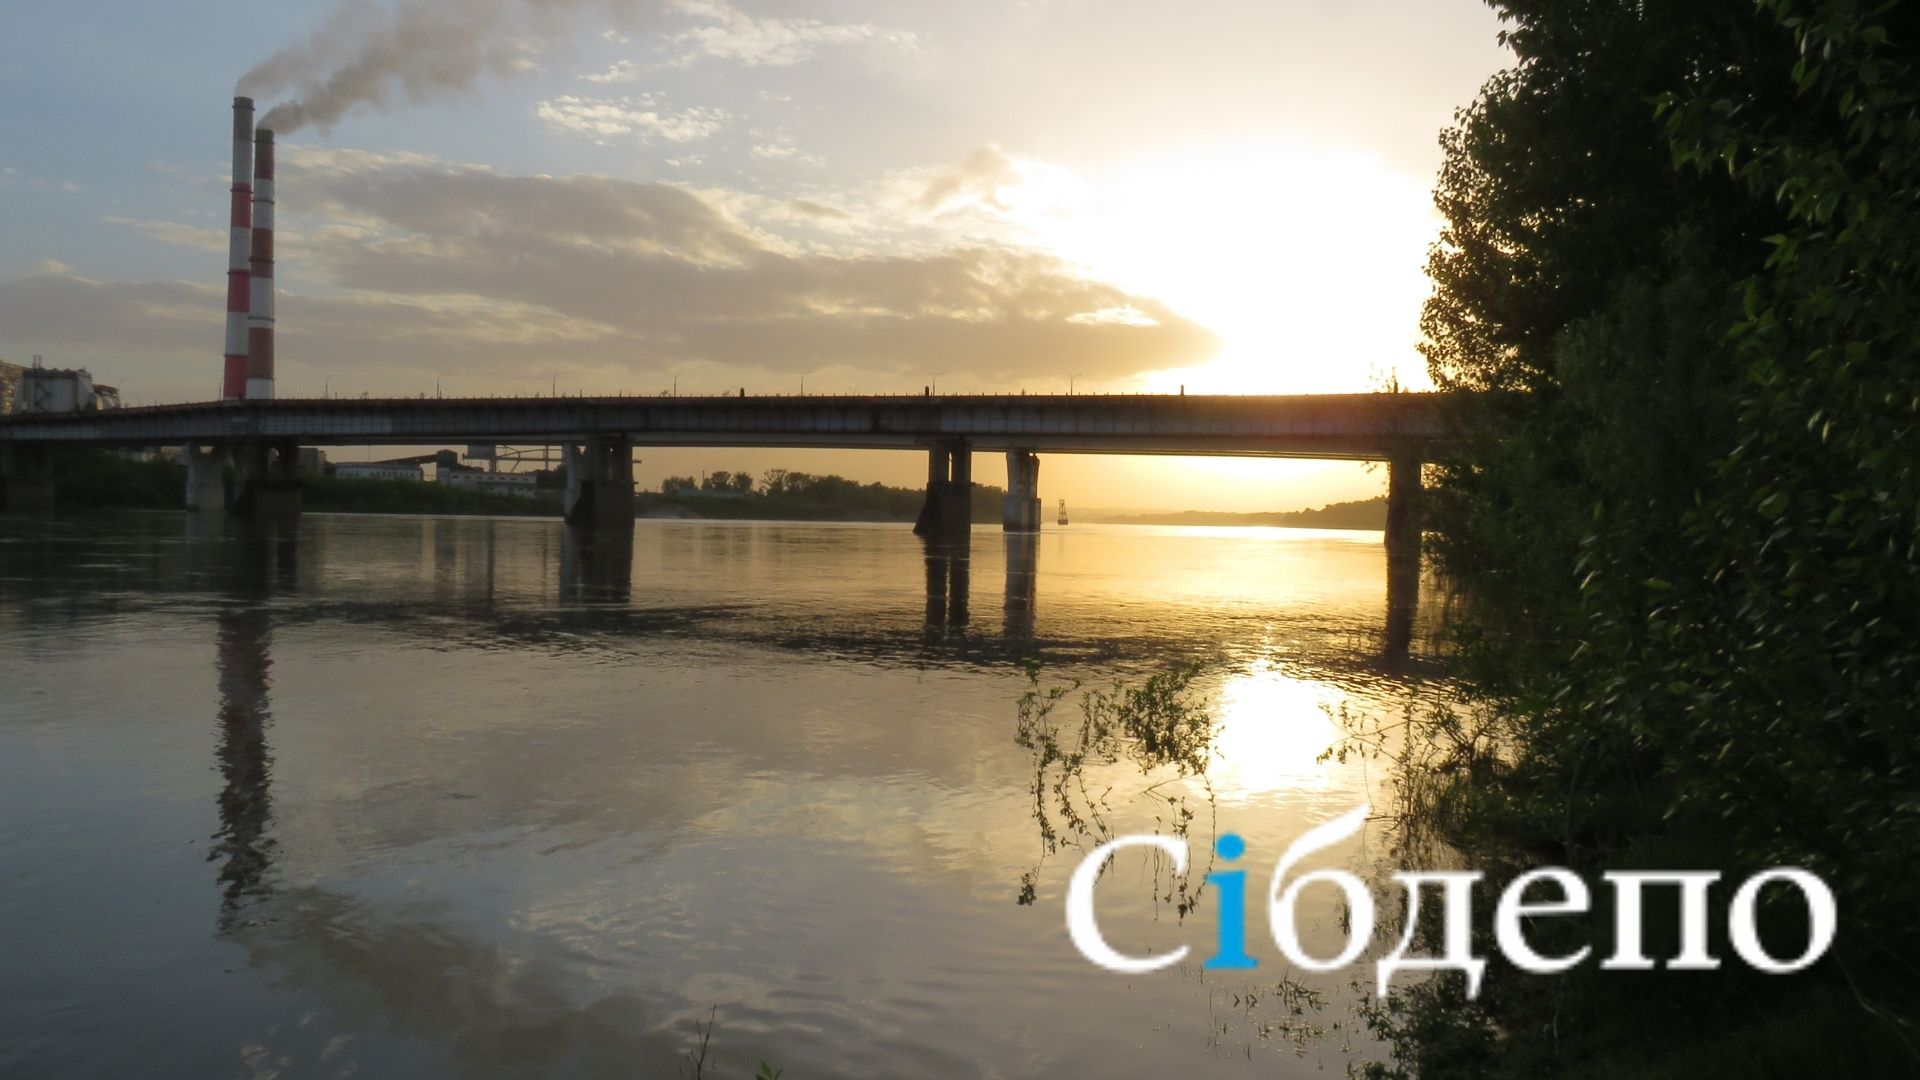 «Нью-Кемерово»: из столицы Кузбасса сделают идеальный город